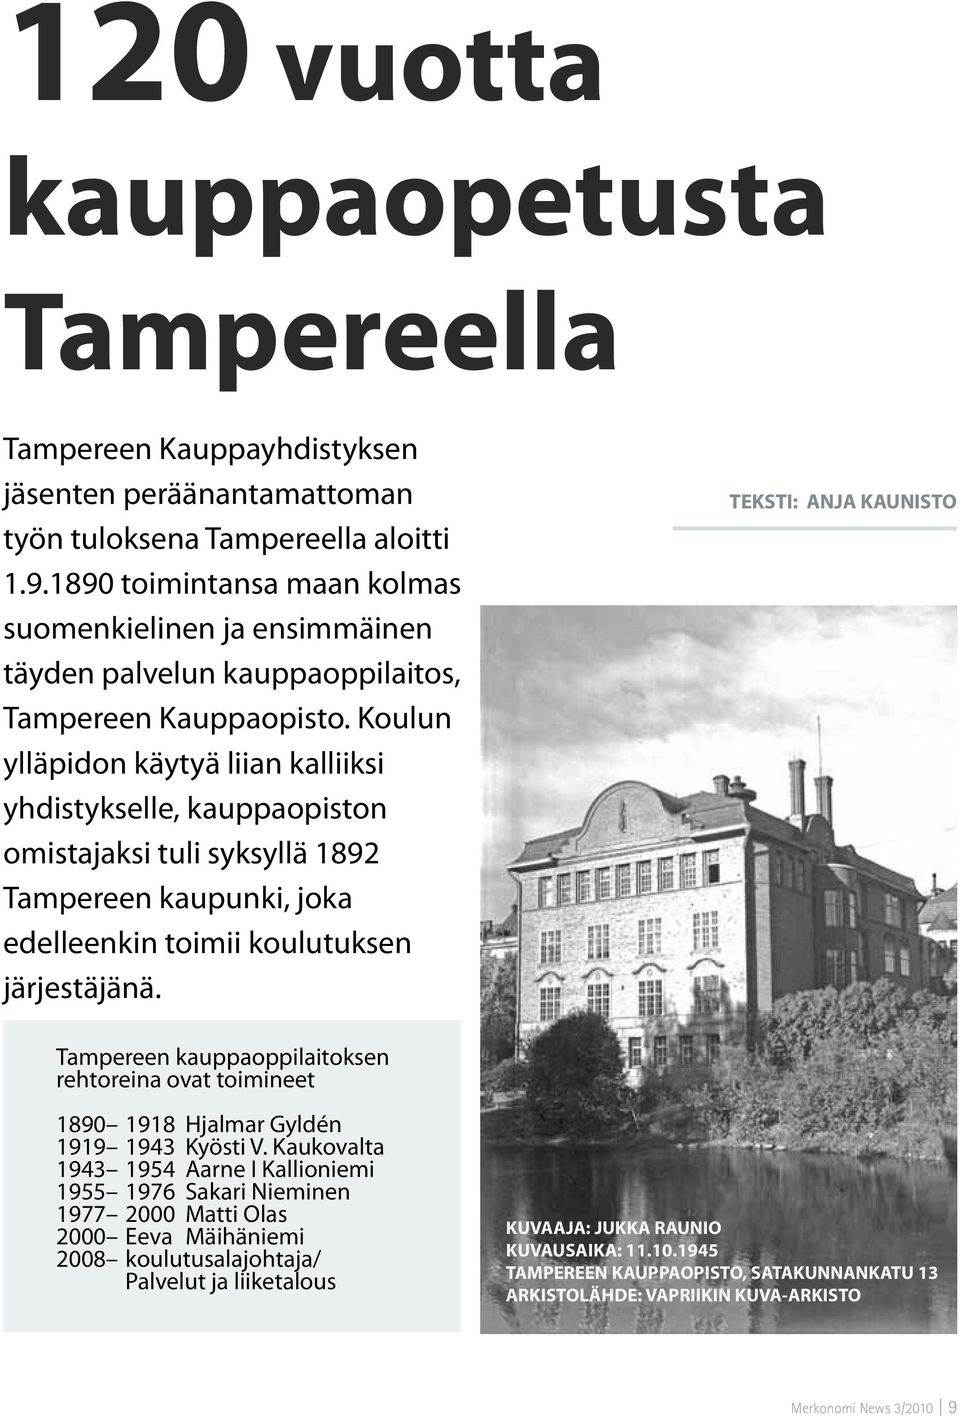 Koulun ylläpidon käytyä liian kalliiksi yhdistykselle, kauppaopiston omistajaksi tuli syksyllä 1892 Tampereen kaupunki, joka edelleenkin toimii koulutuksen järjestäjänä.